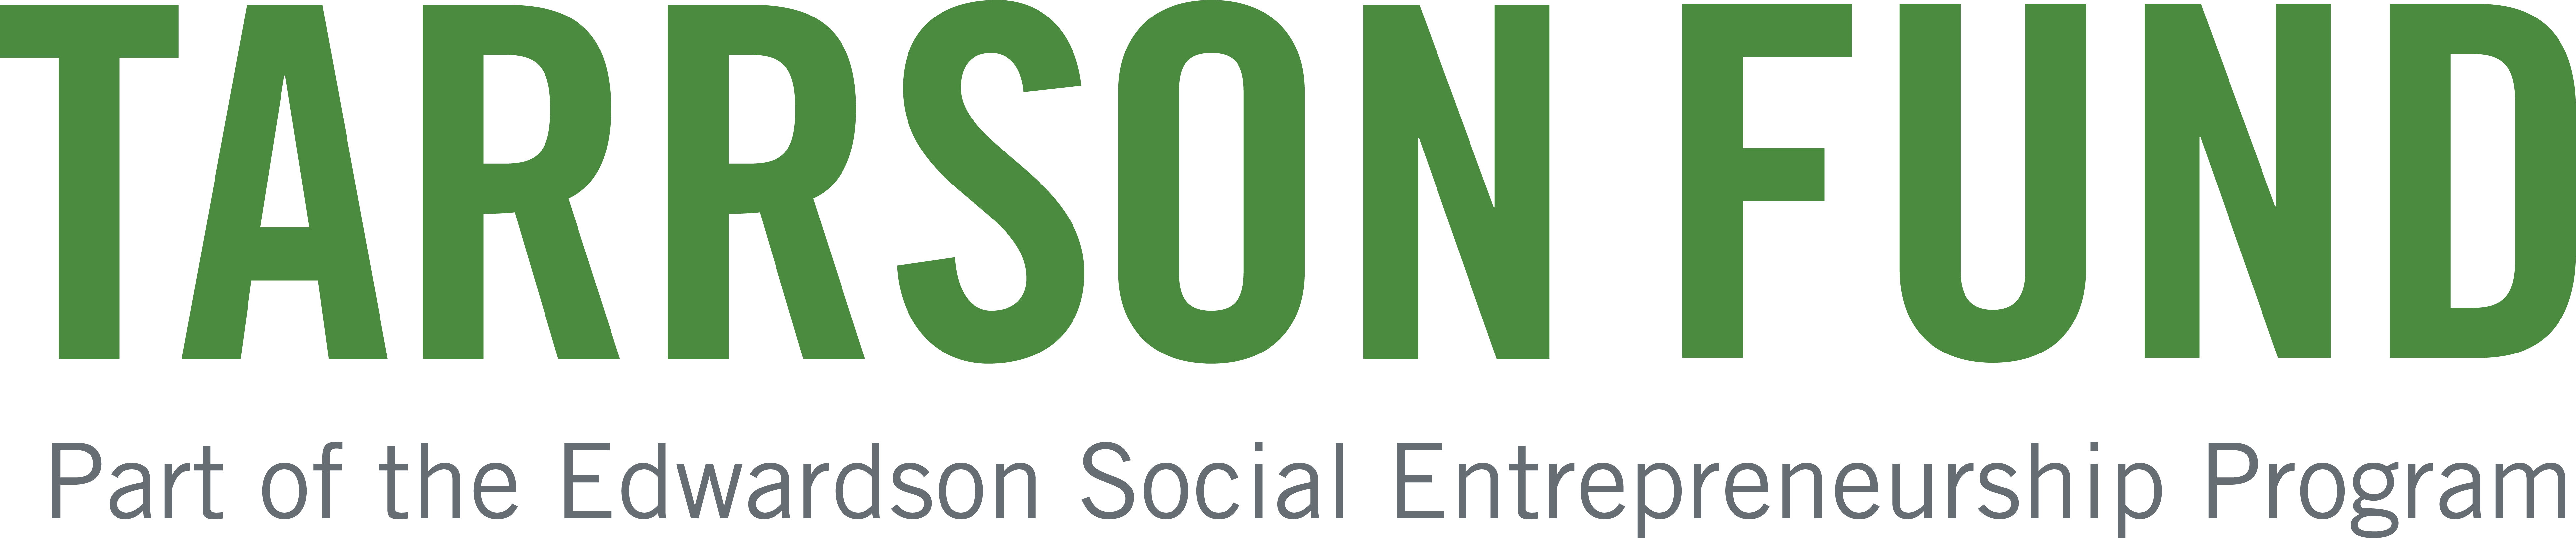 Tarrson Fund logo